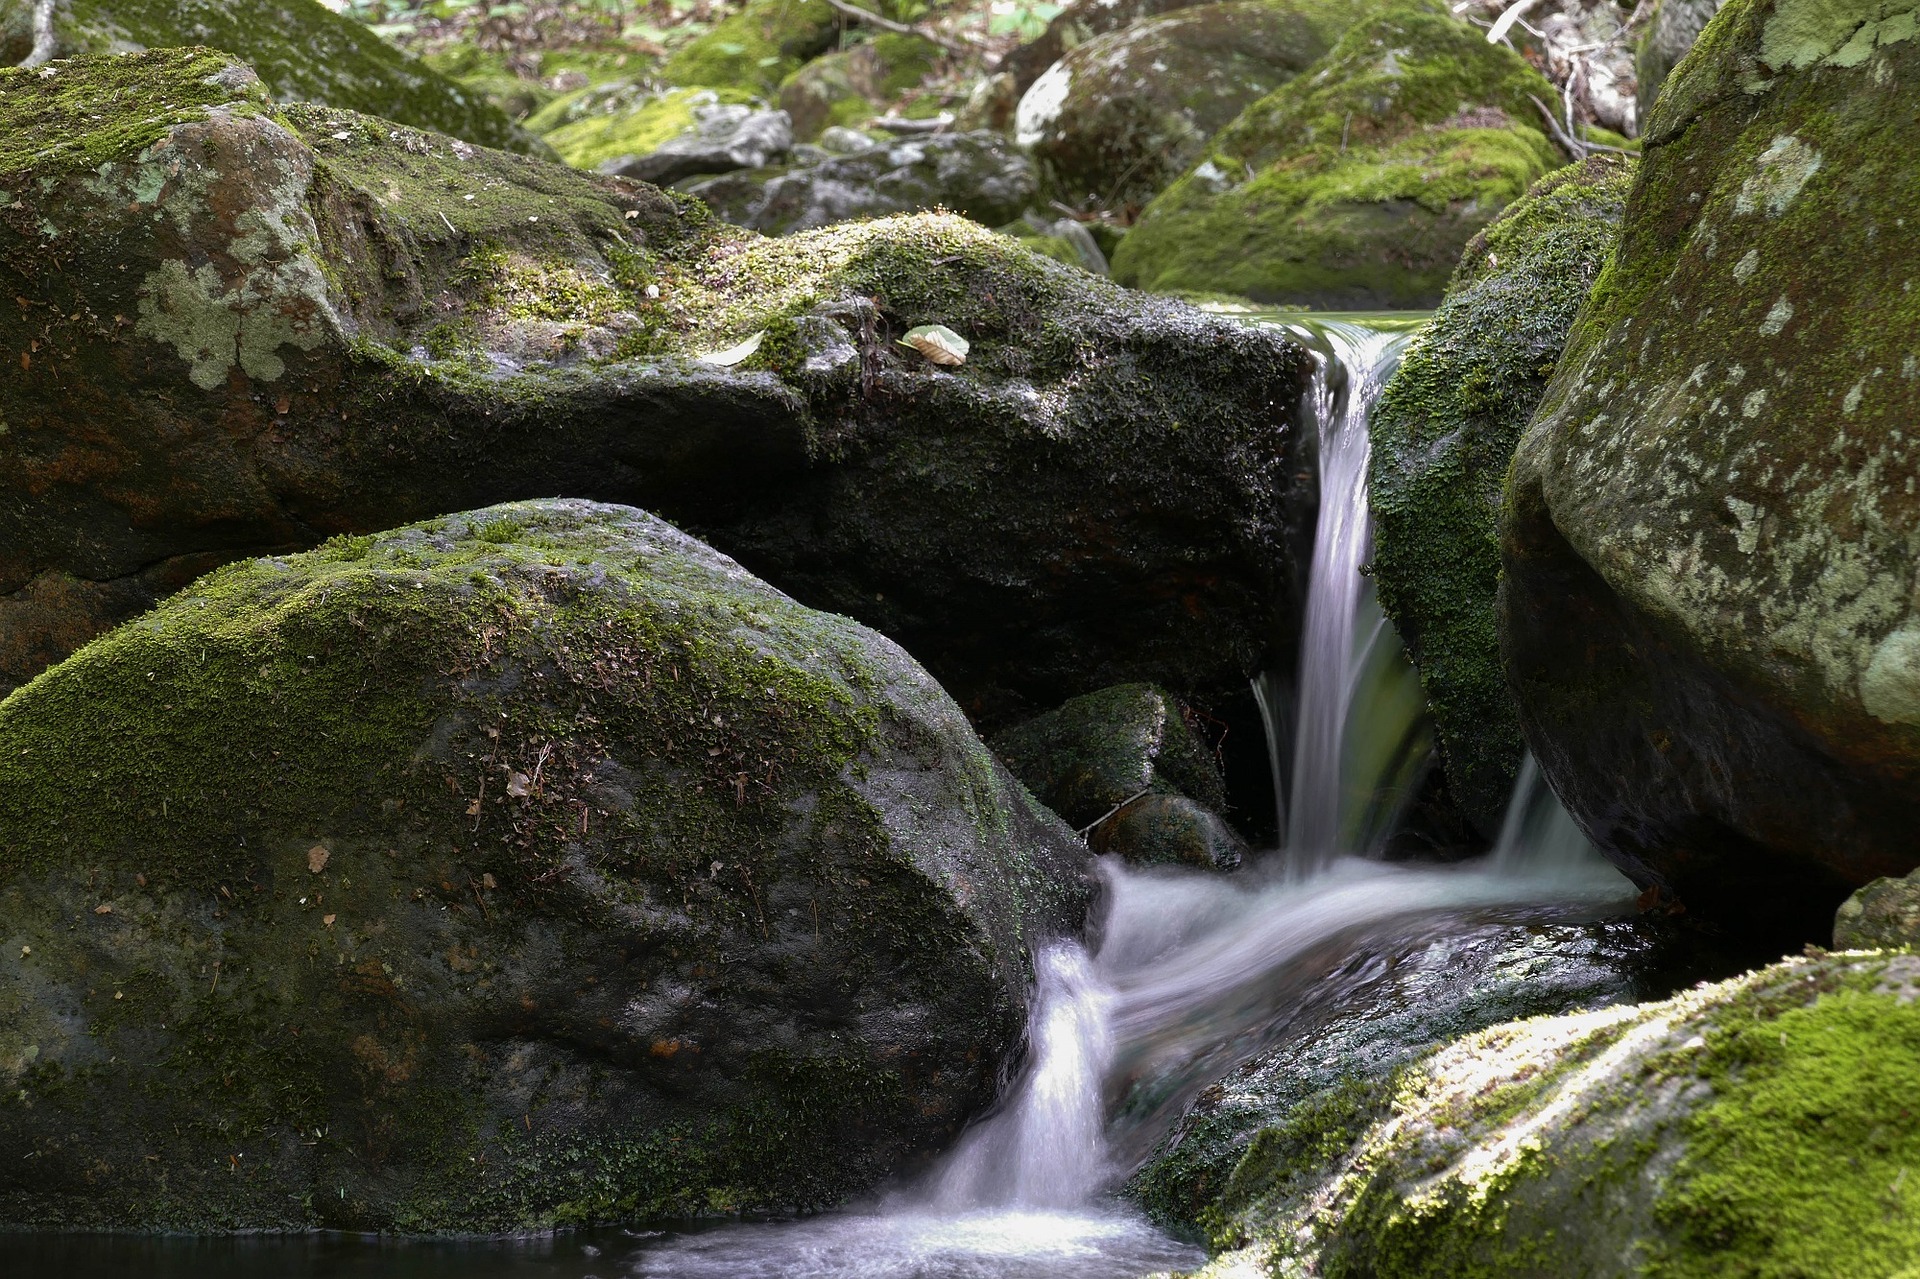 moss rock waterfall in garden toxin removing plants